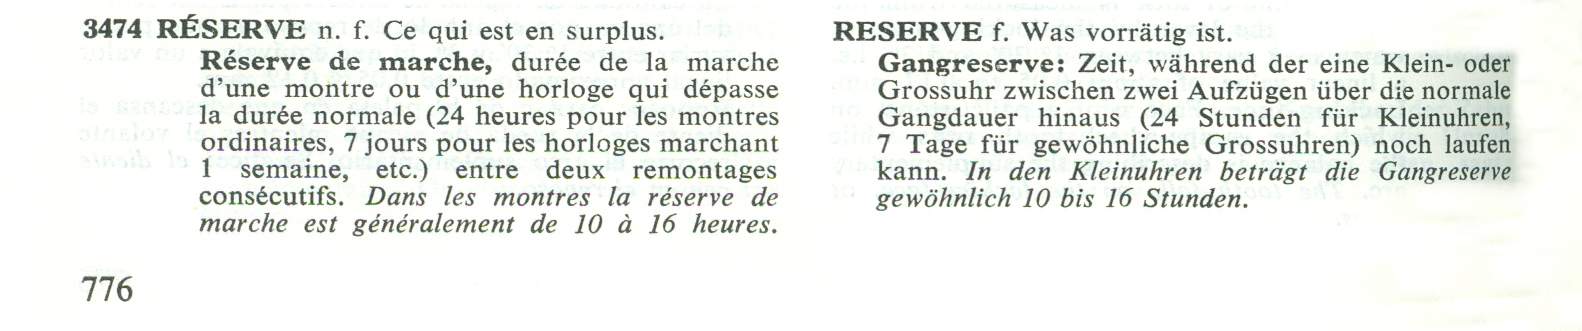 Georges Albert Berner Illustriertes Wörterbuch der Uhrmacherei Gangreserve